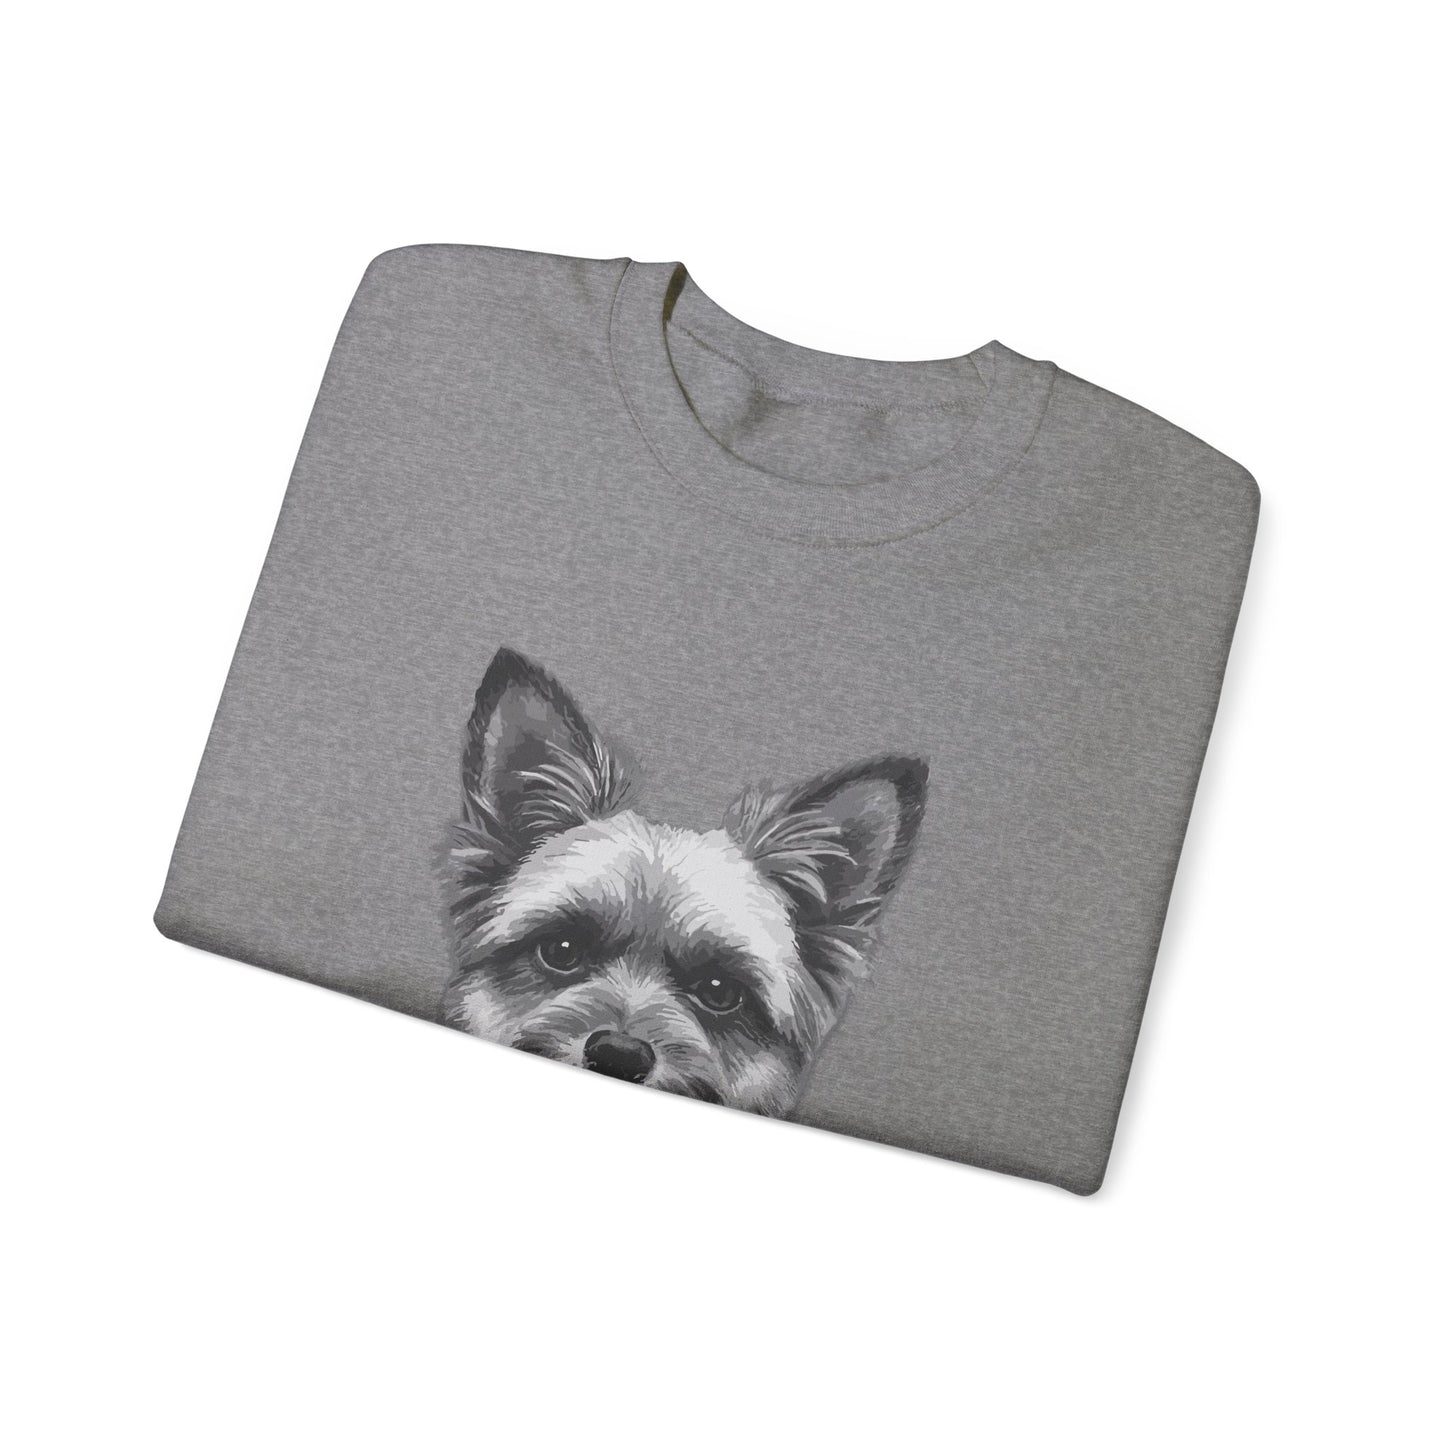 Cairn Terrier, Dog, Dog Lover, Unisex Heavy Blend™ Crewneck Sweatshirt